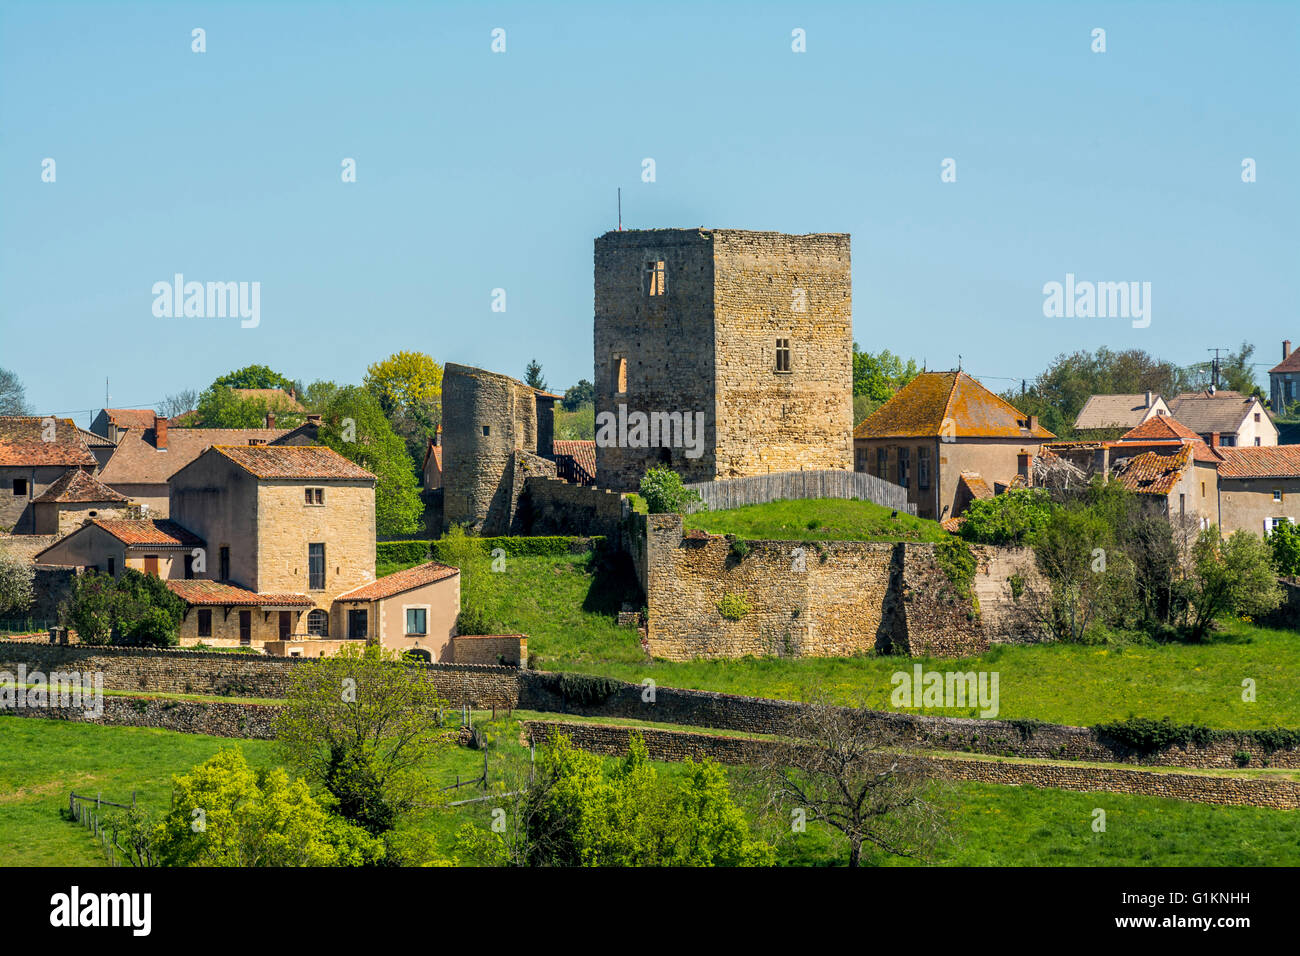 Semur en Brionnais. Labelled Les Plus Beaux Villages de France, Brionnais region, Saone-et-Loire department, Bourgogne-Franche-Comté, France Stock Photo